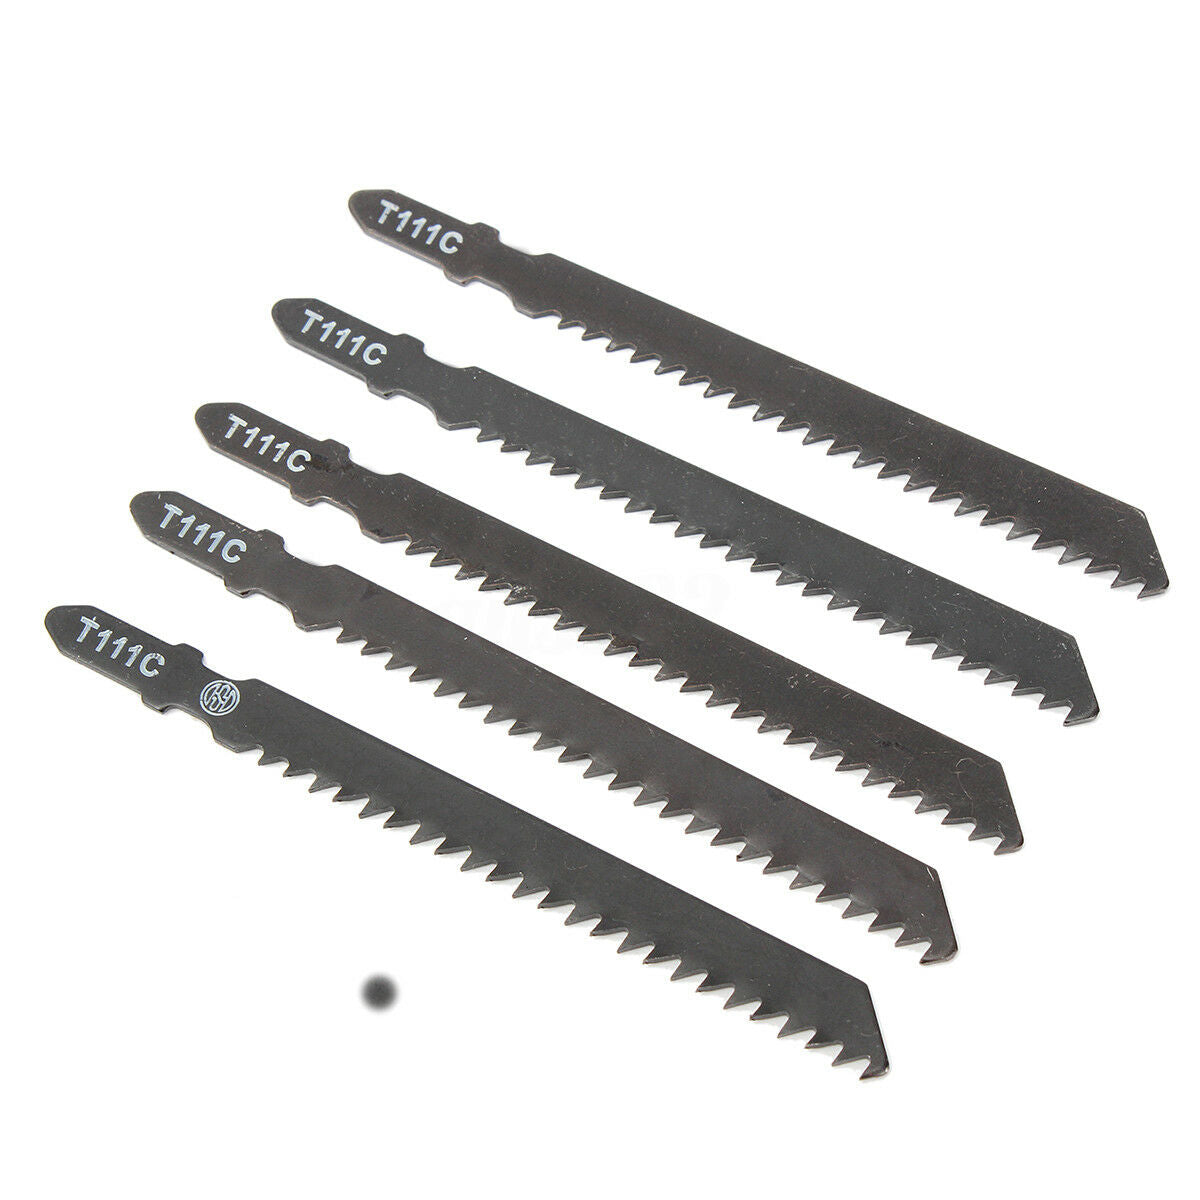 5Pcs/pack T111C HCS T shank Jigsaw Blades Wood Plastic Metal Fast Cutting Tools